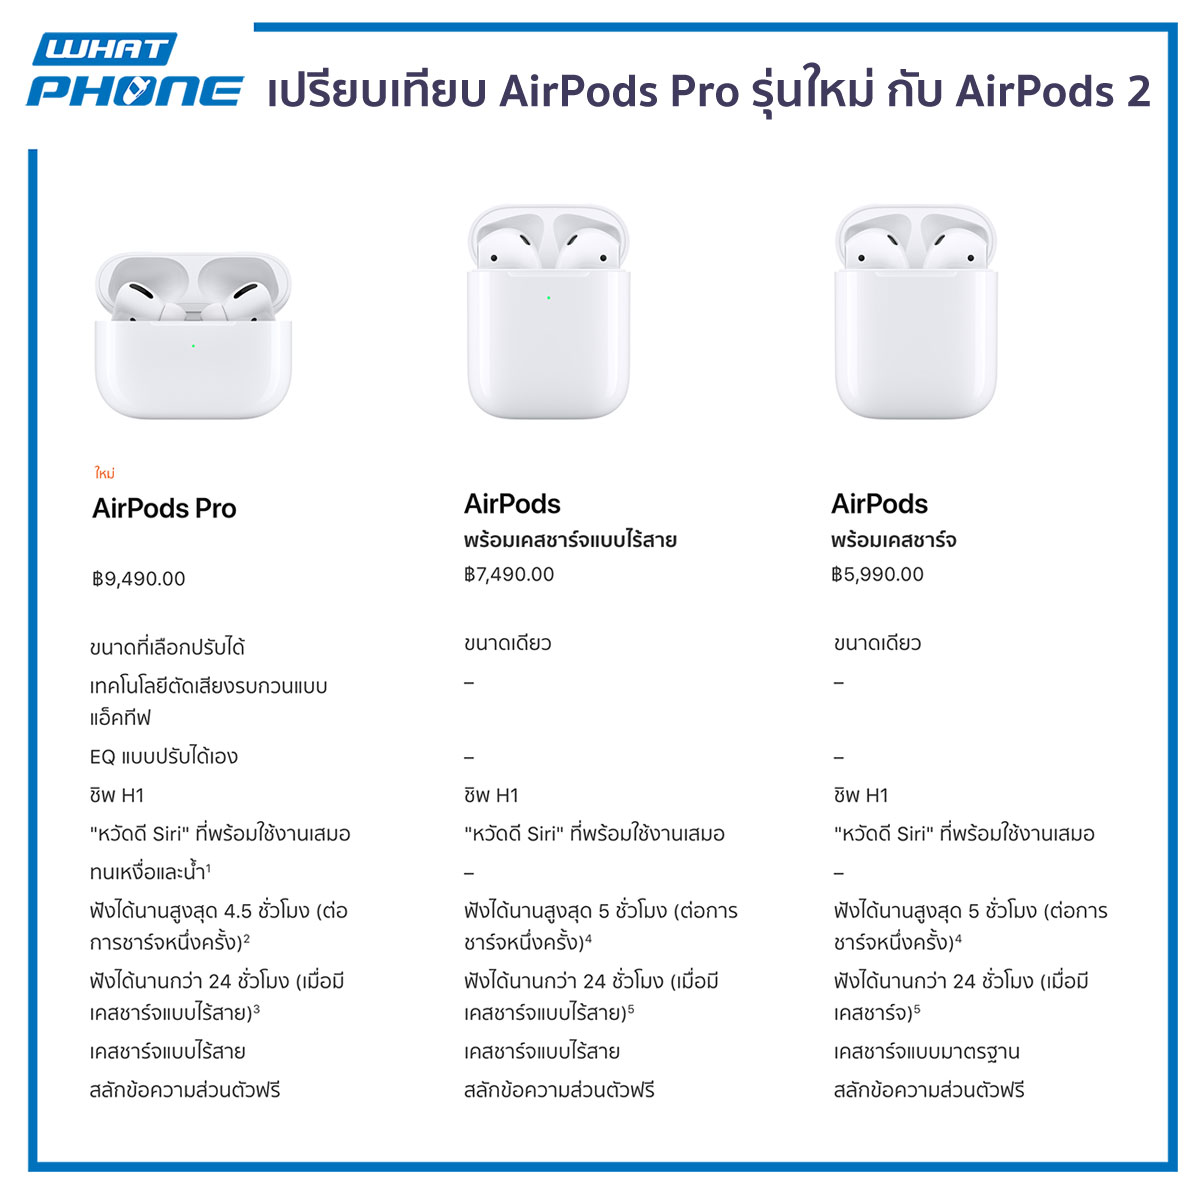 เปรียบเทียบ AirPods Pro รุ่นใหม่ กับ AirPods 2 ต่างกันอย่างไร?